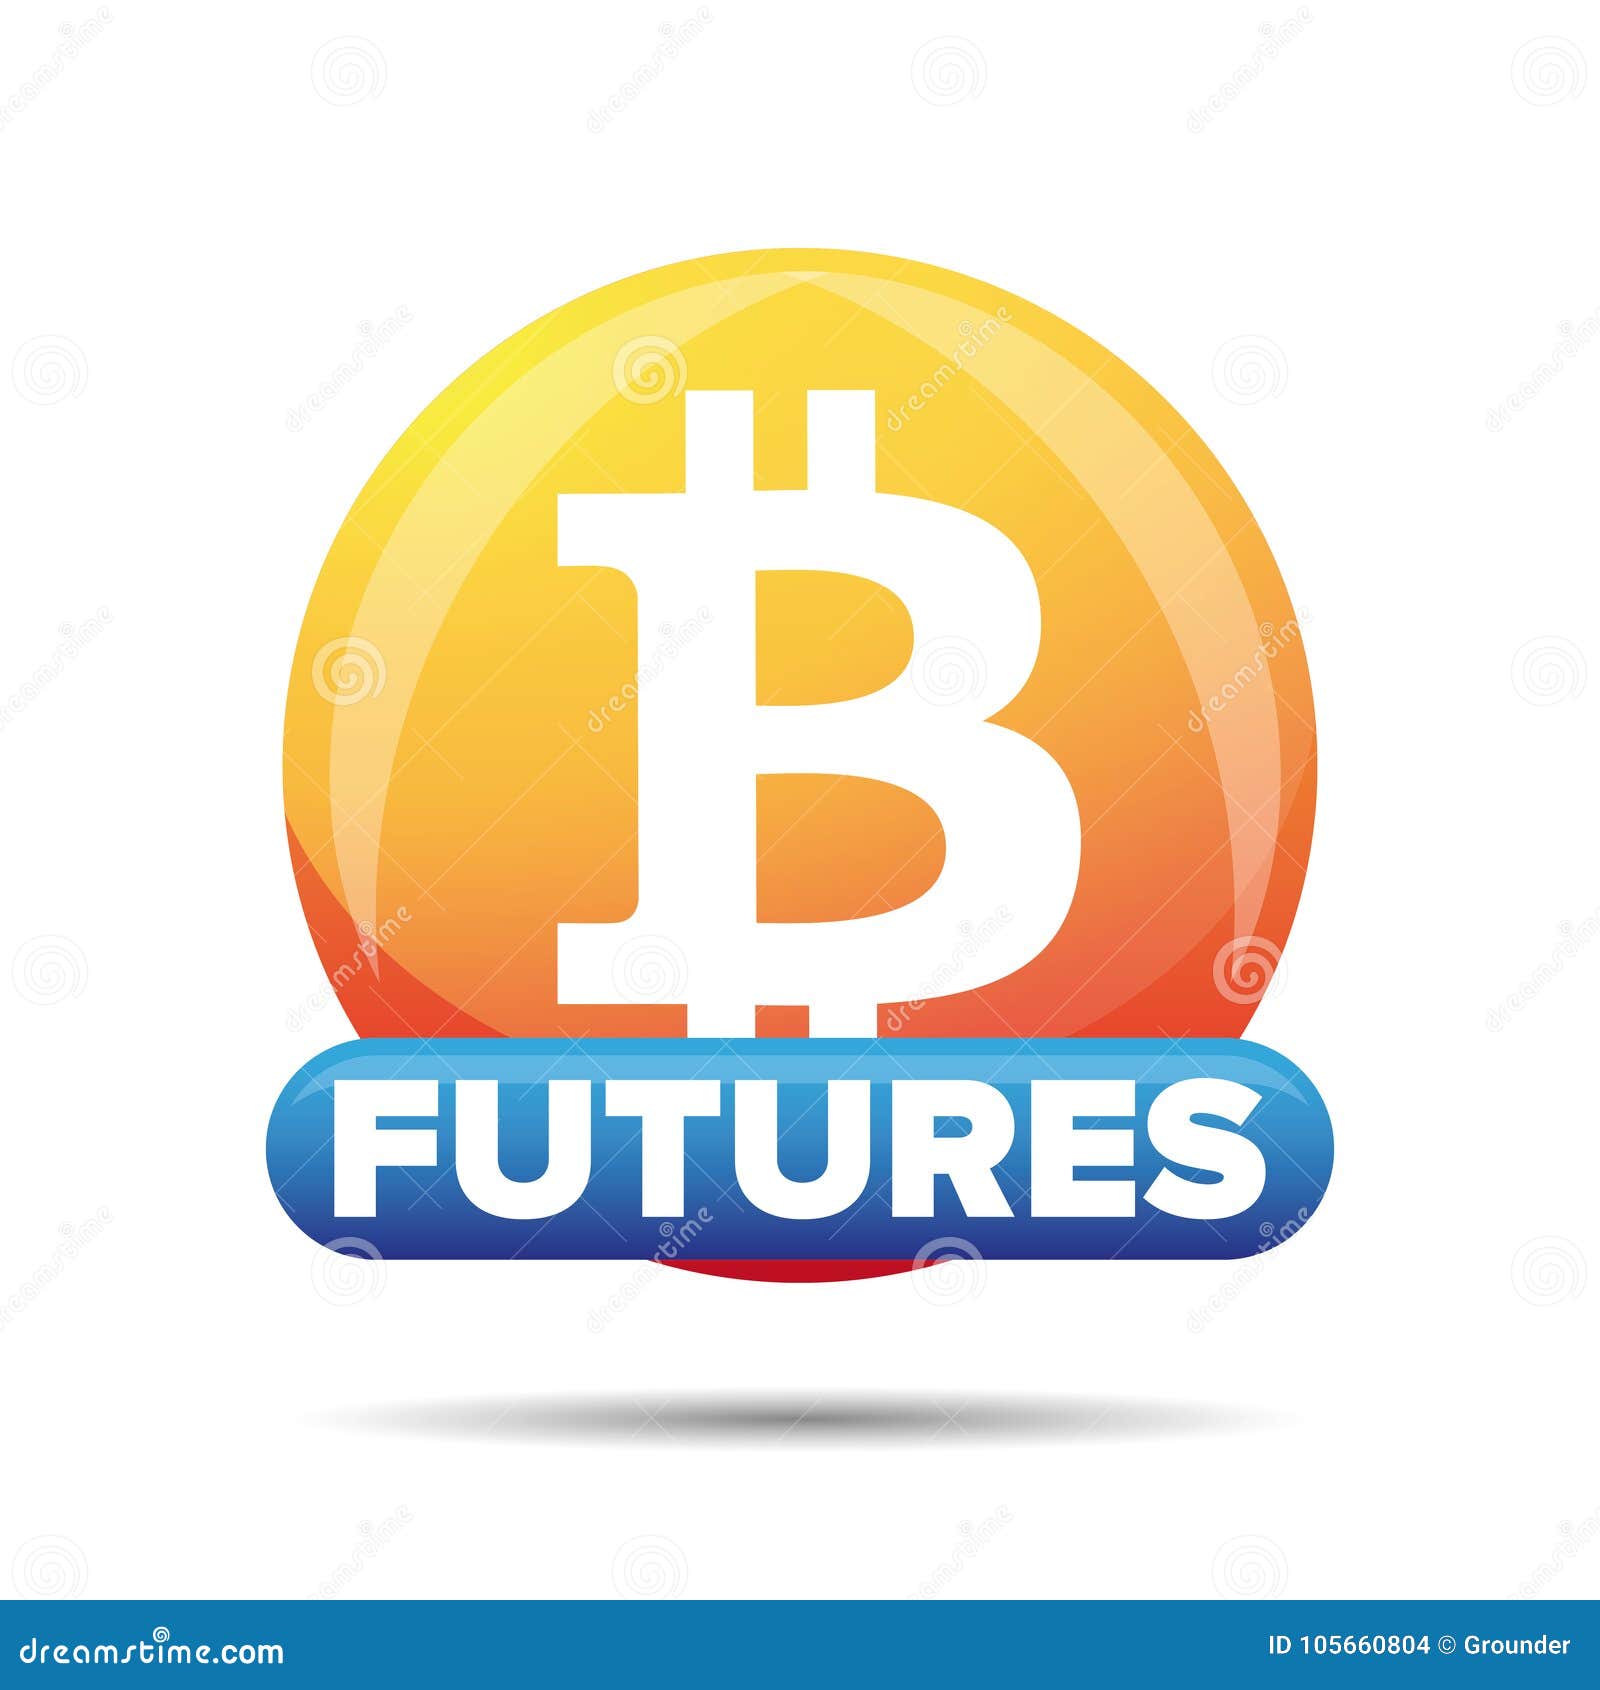 bitcoin futures stock symbol